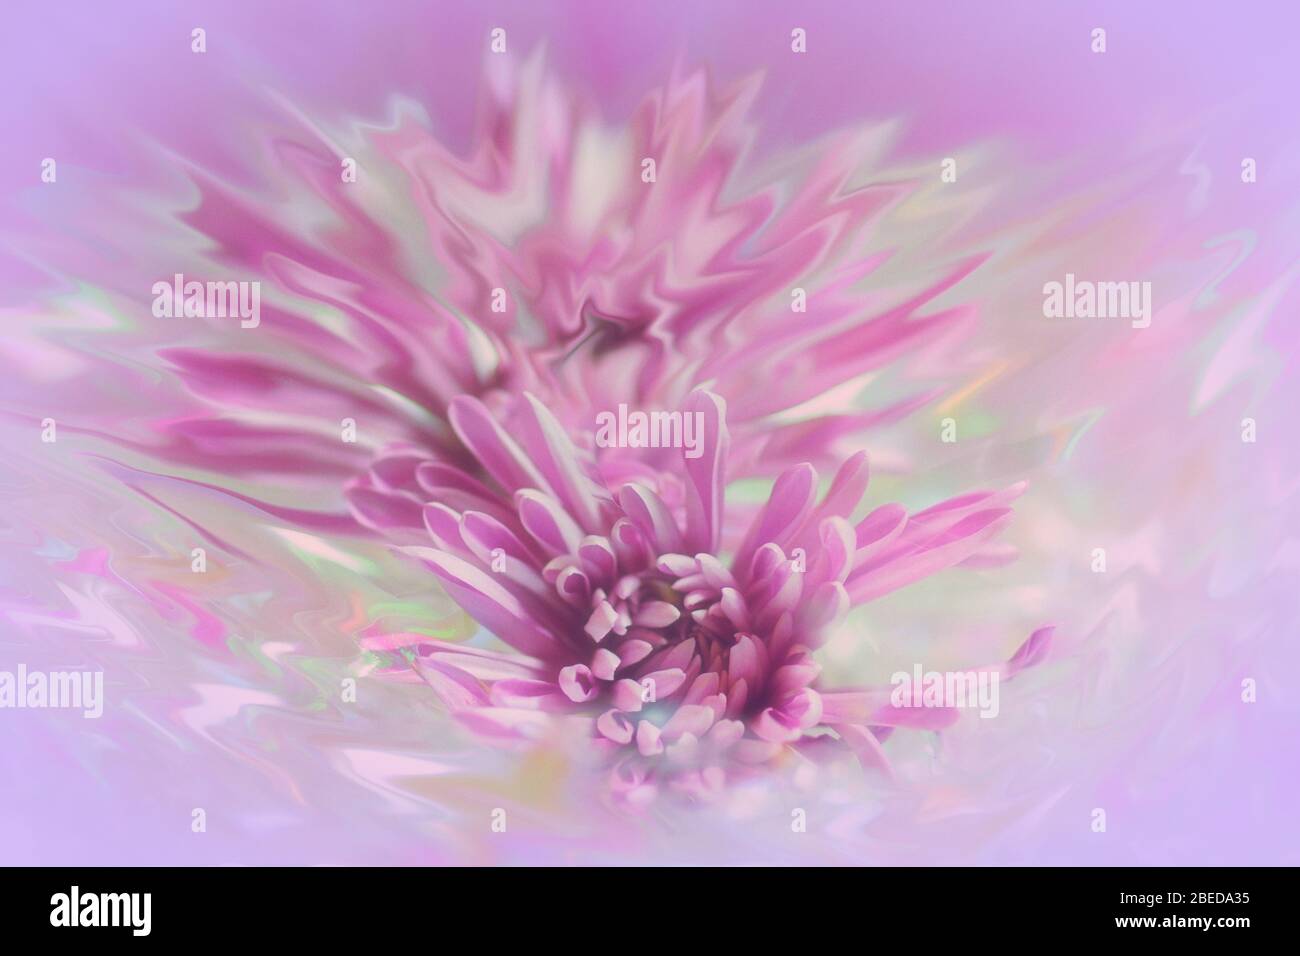 Résumé flou d'un chrysanthème rose avec effet de liquéfaction photographique sur un fond rose et lumineux Banque D'Images